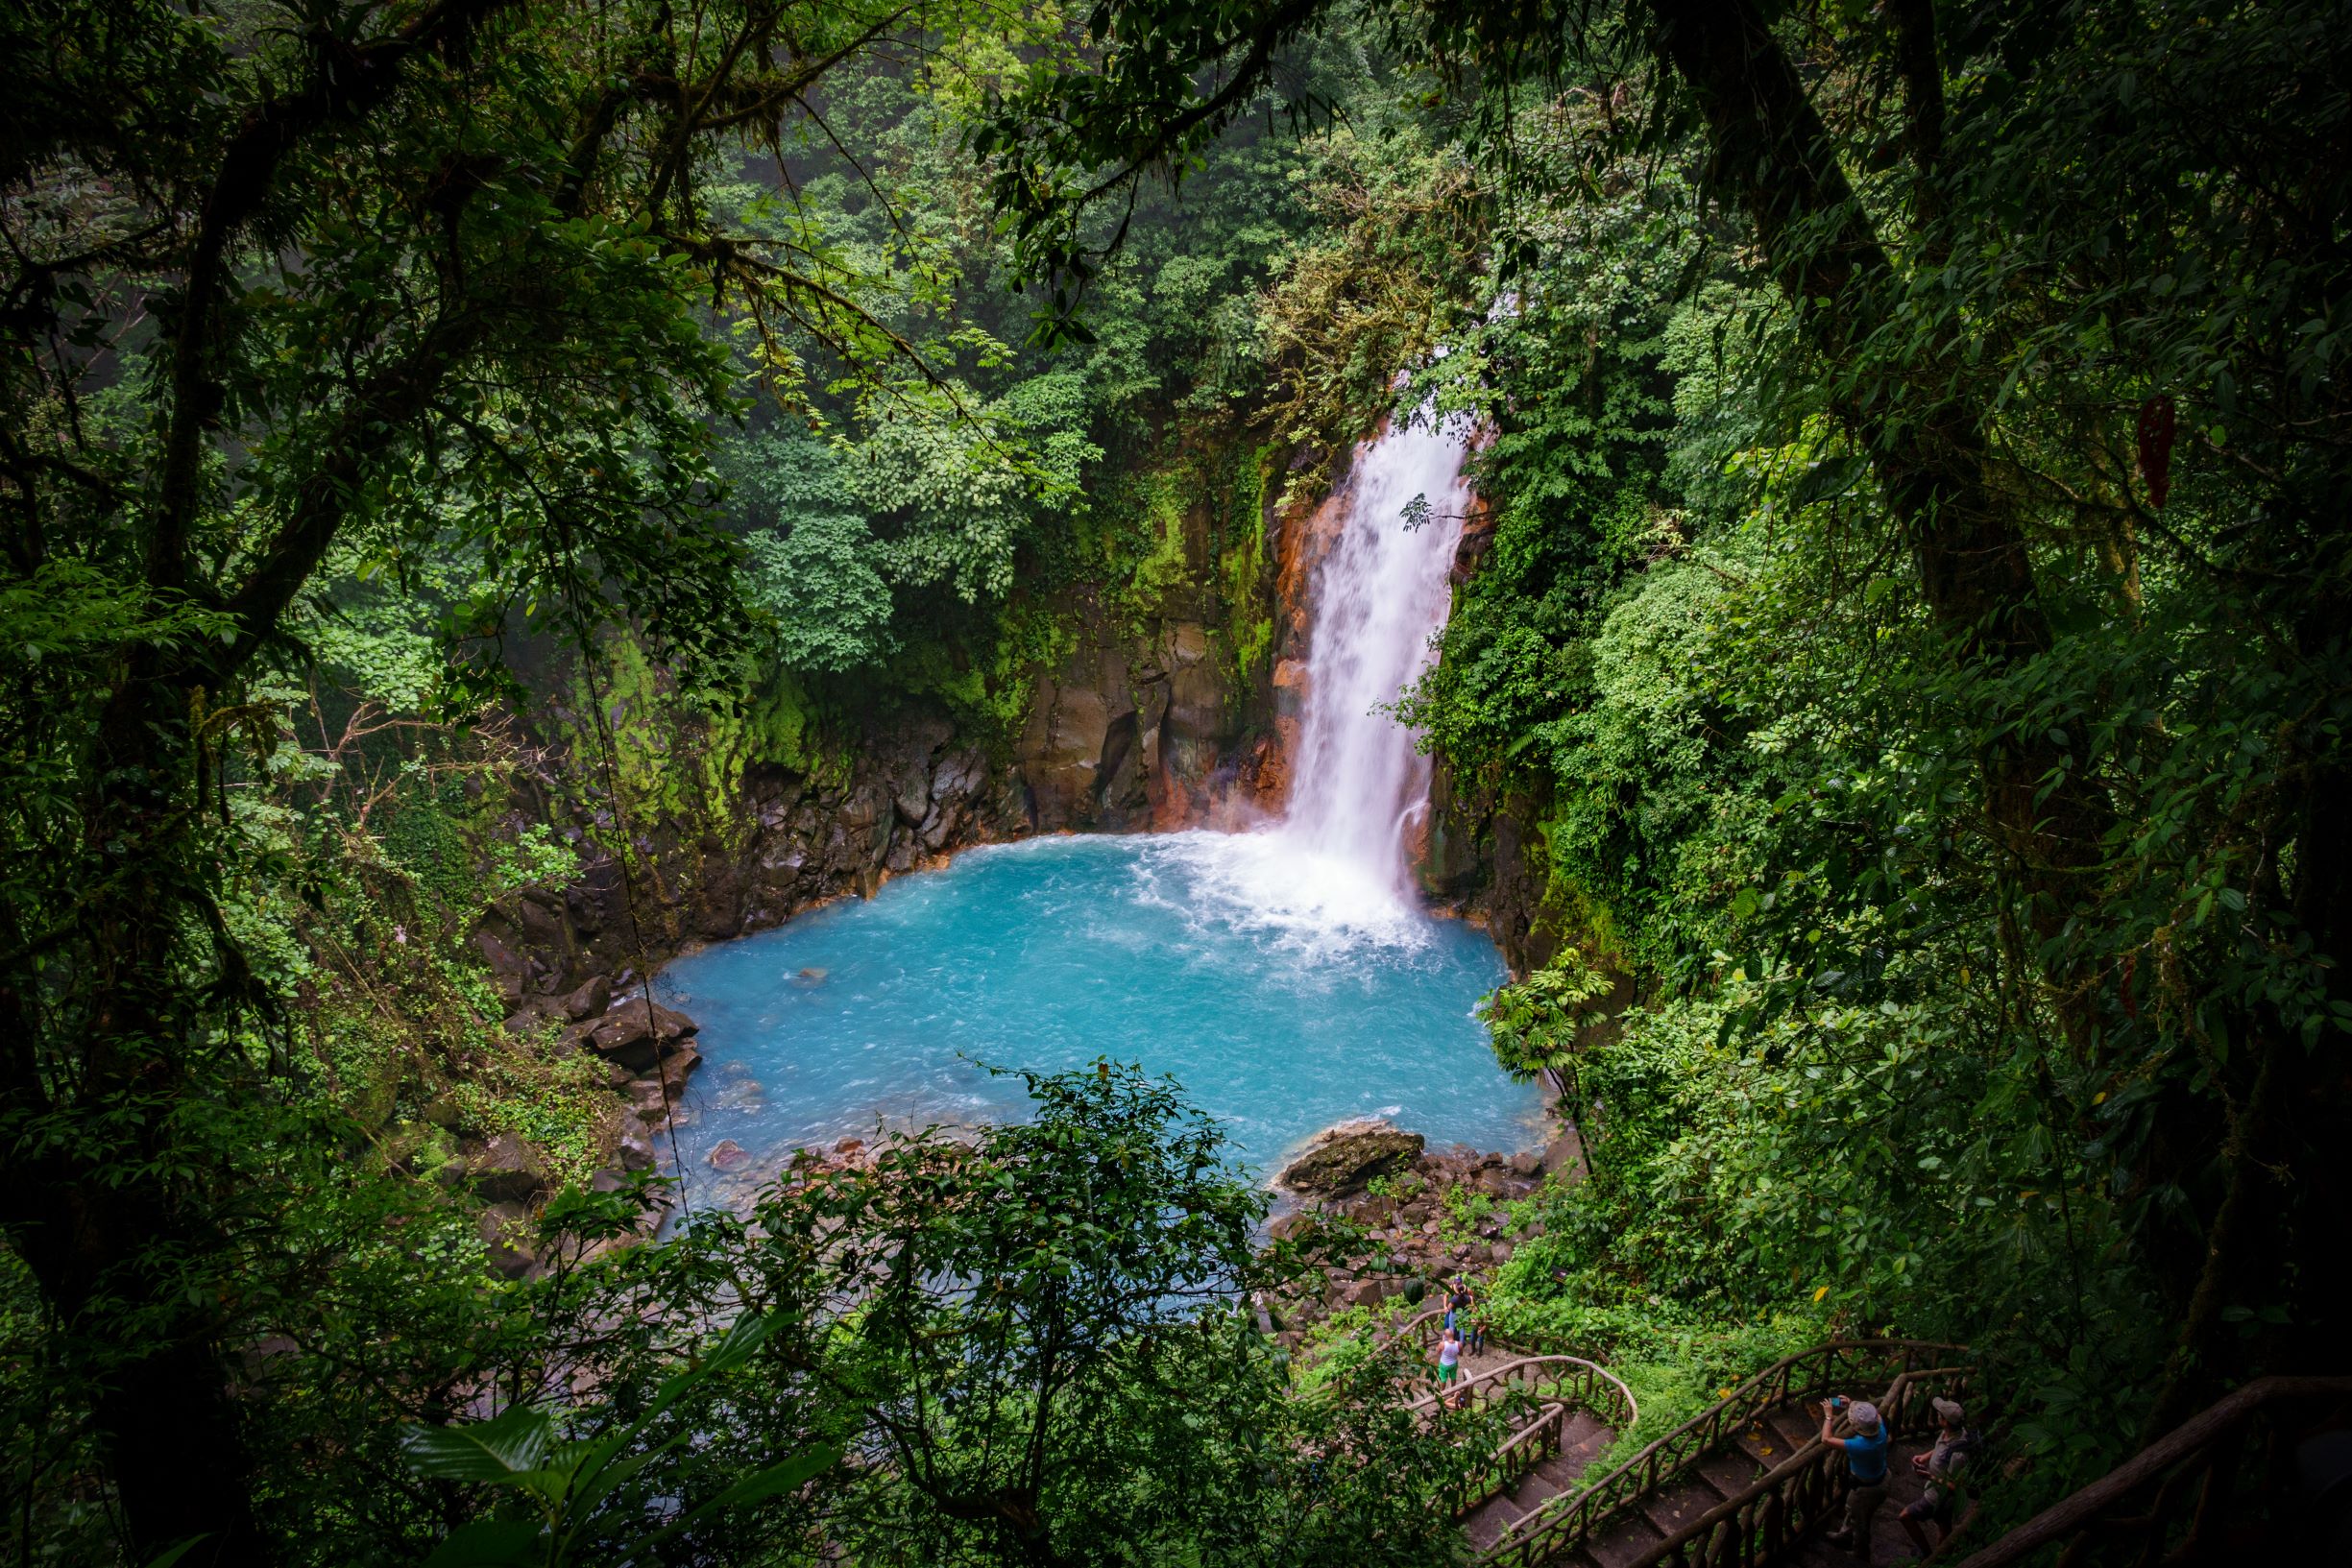 Tenorio Waterfall, Costa Rica